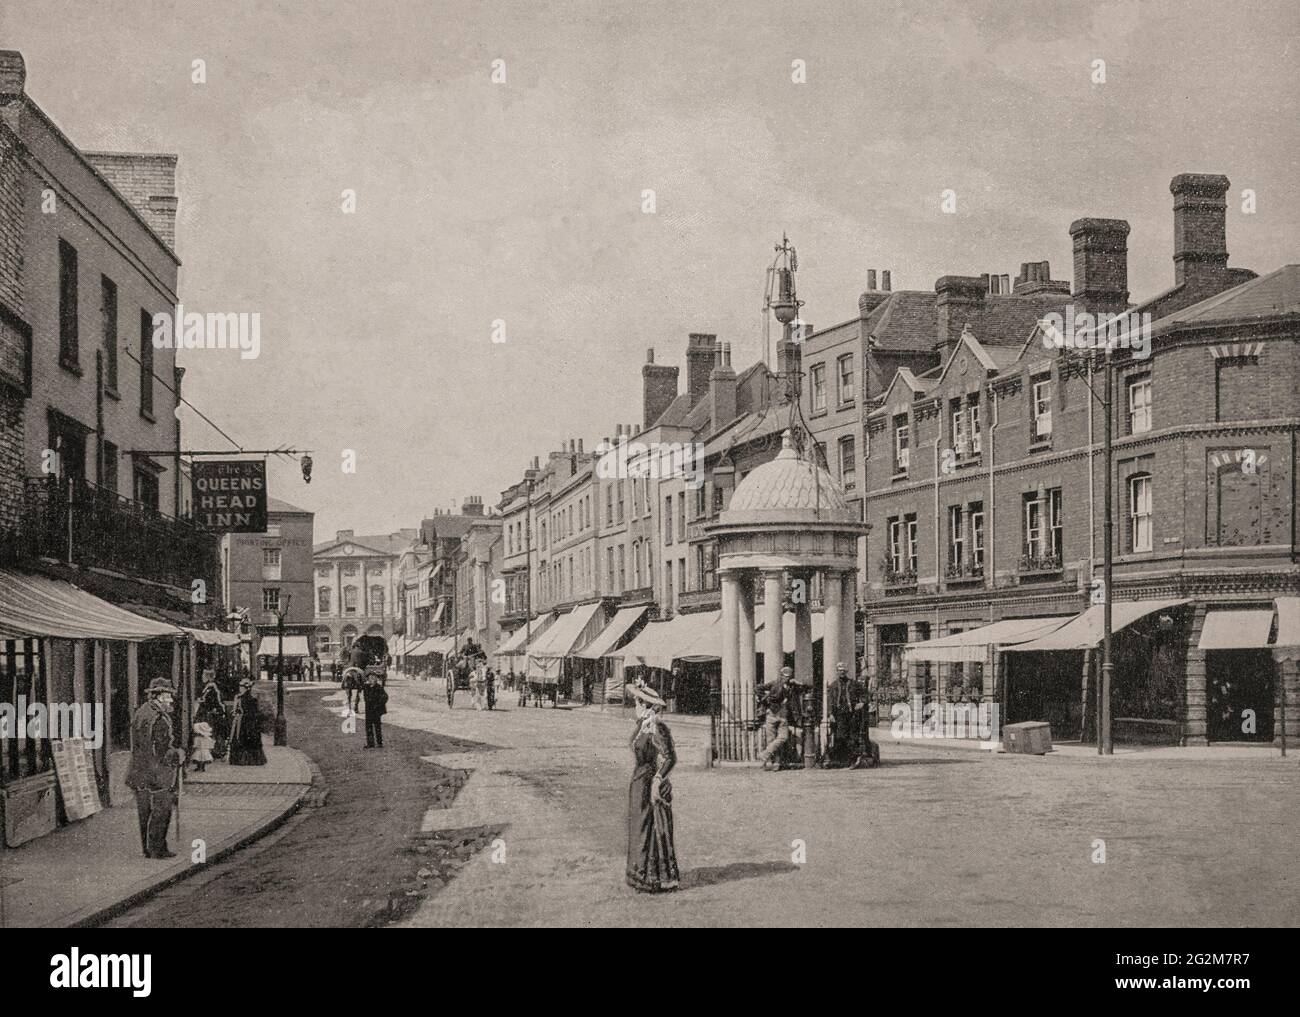 Eine Ansicht des Conduit aus dem späten 19. Jahrhundert in Chelmsford, der Stadt und der Grafschaft Essex, England. Einst beherbergte sie die einzige Frischwasserversorgung der Stadt, bis sie an die High Street verlegt wurde, wo sie von 1857 t0 1940 stand. Stockfoto